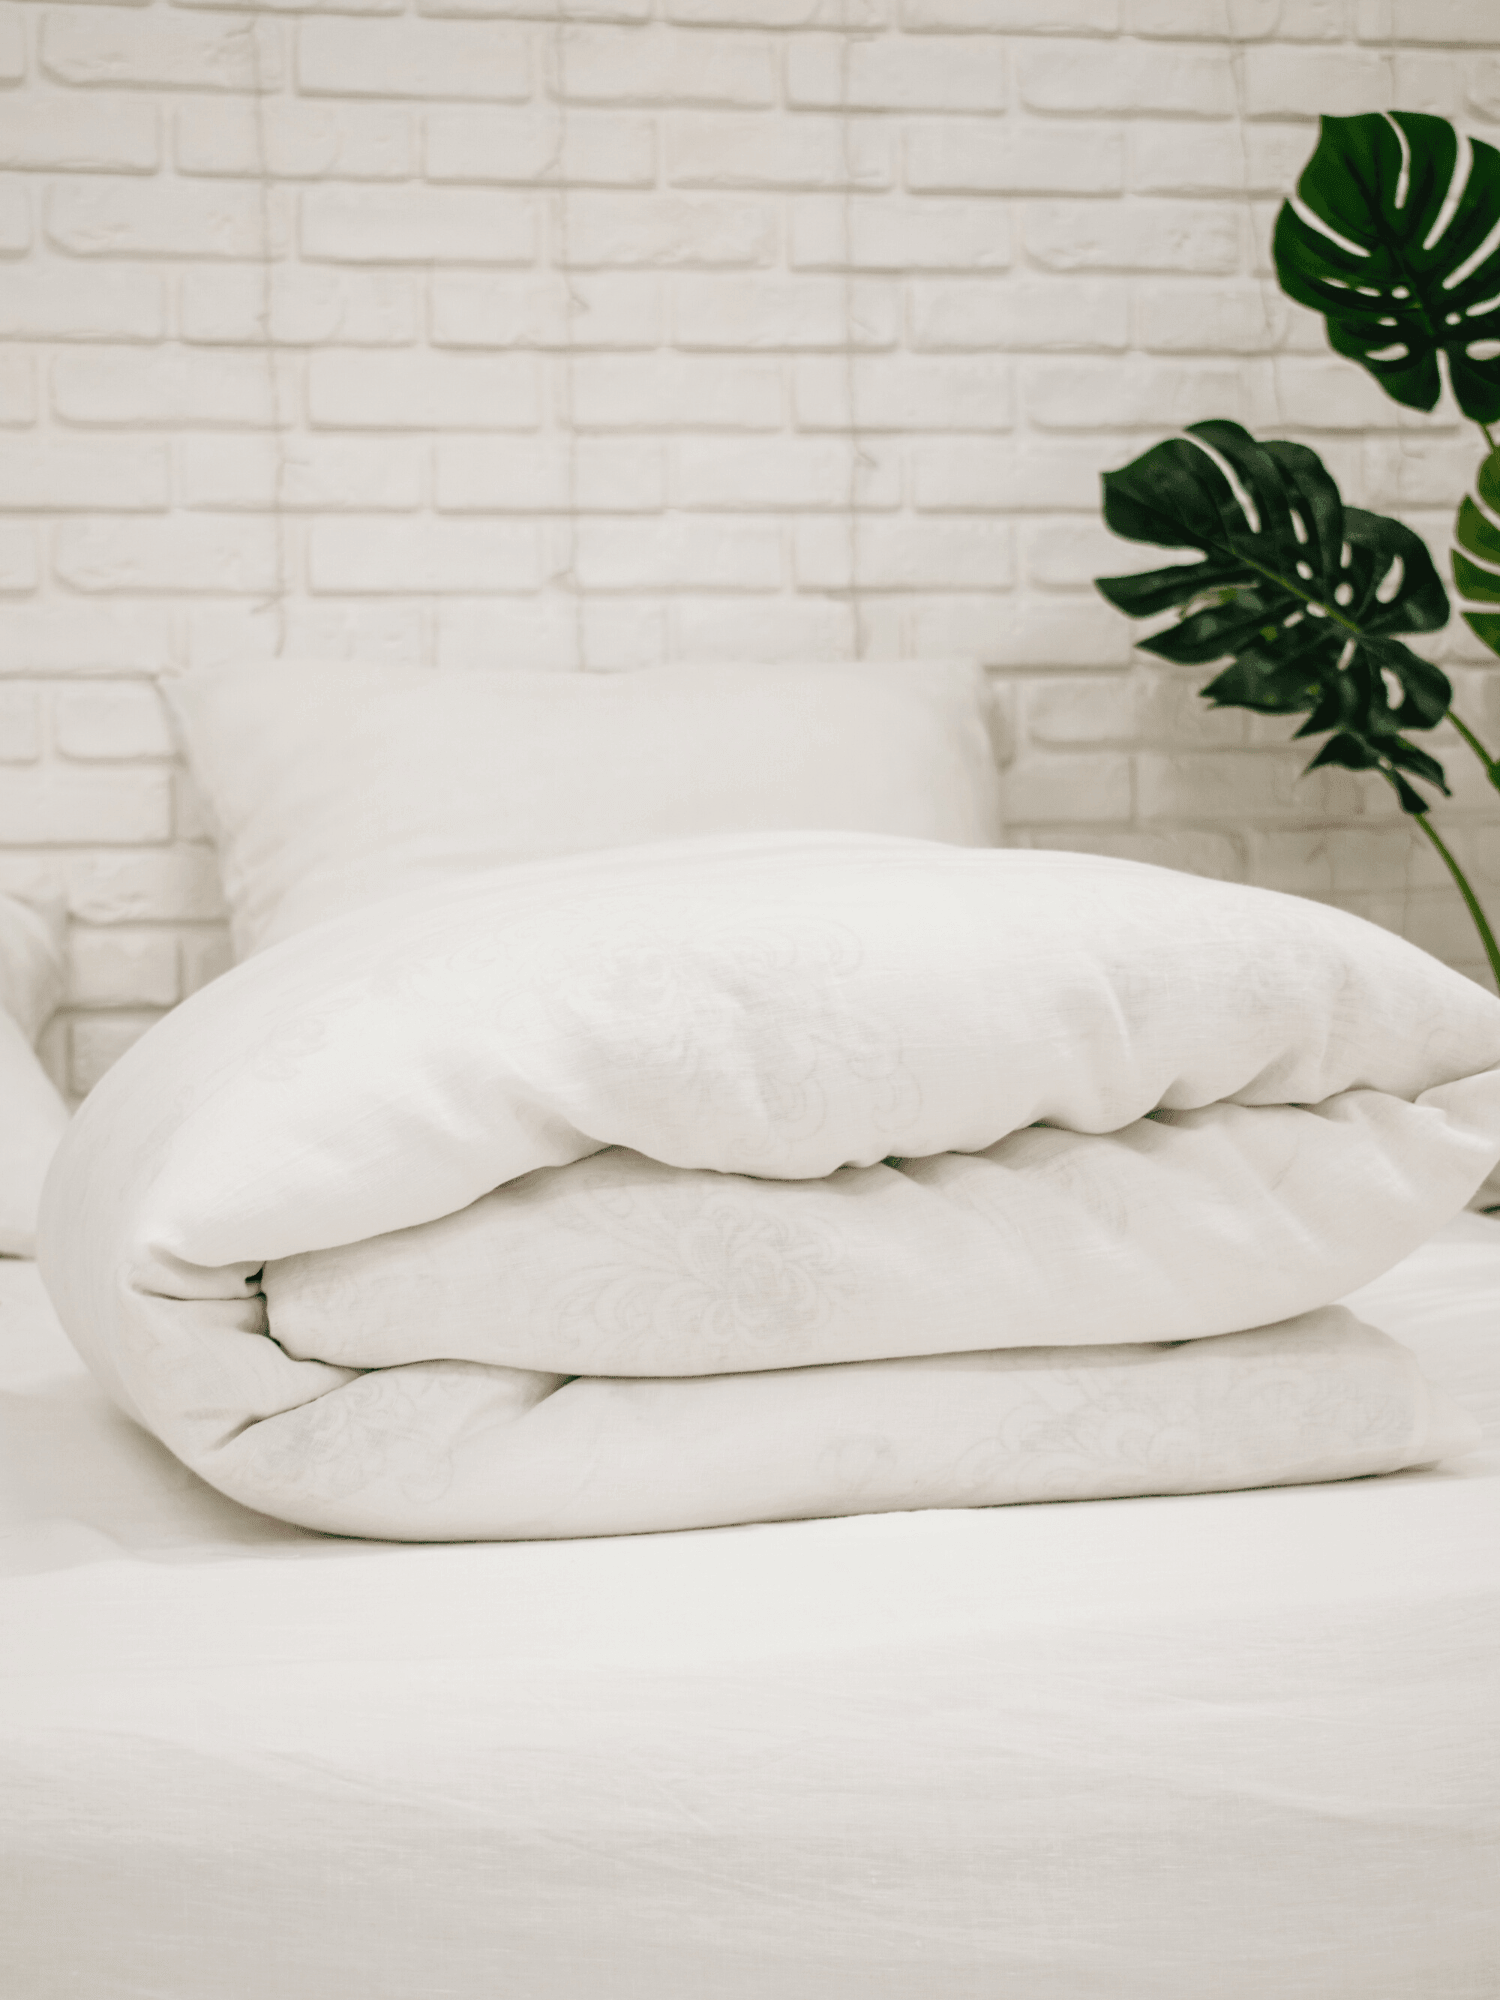 Creame white soft linen duvet cover - Bedroom, Linen duvet cover - FlaxLin Eco Textiles